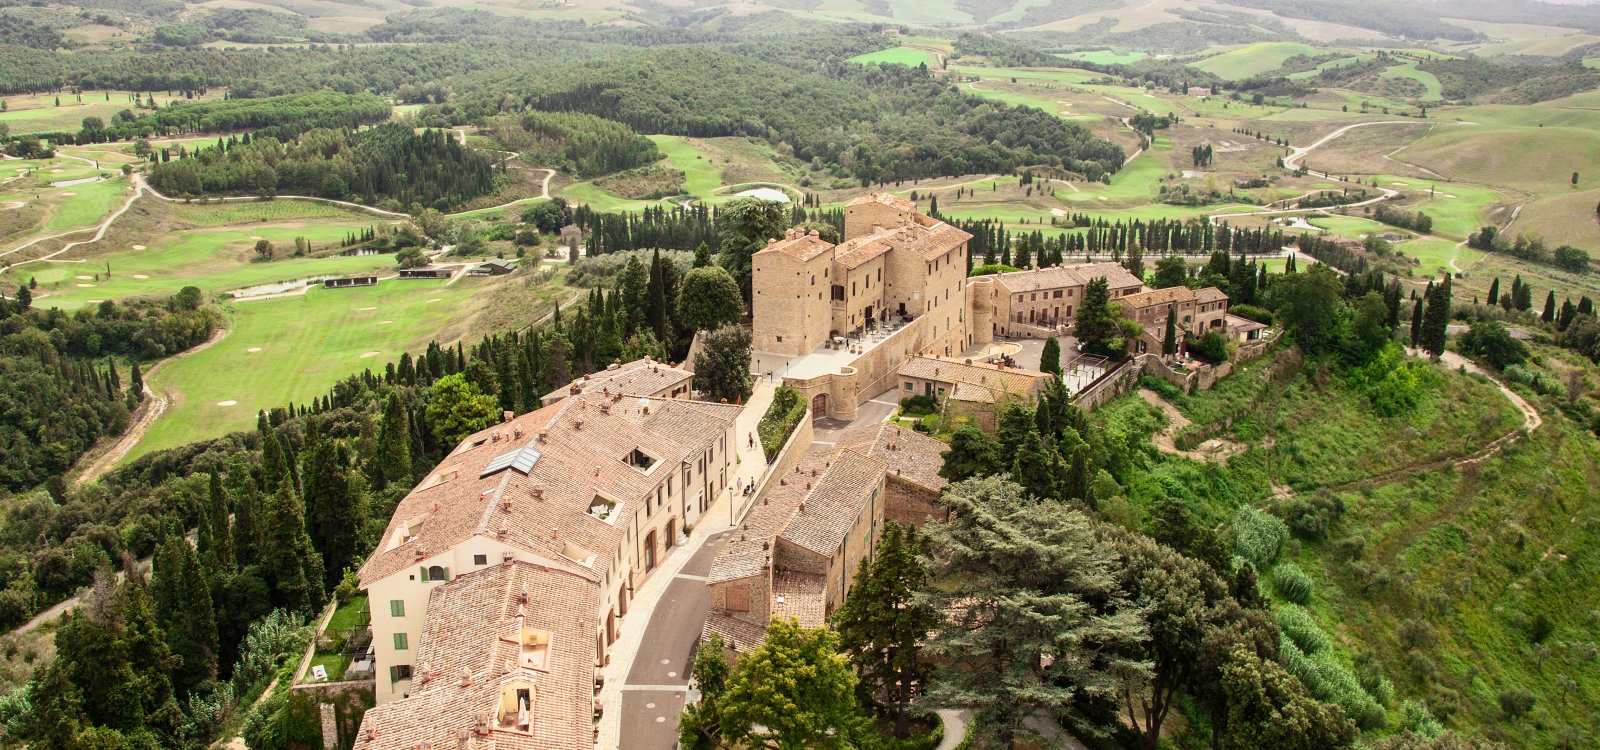 Il Castello e La Barriccaia - Toscana Resort Castelfalfi